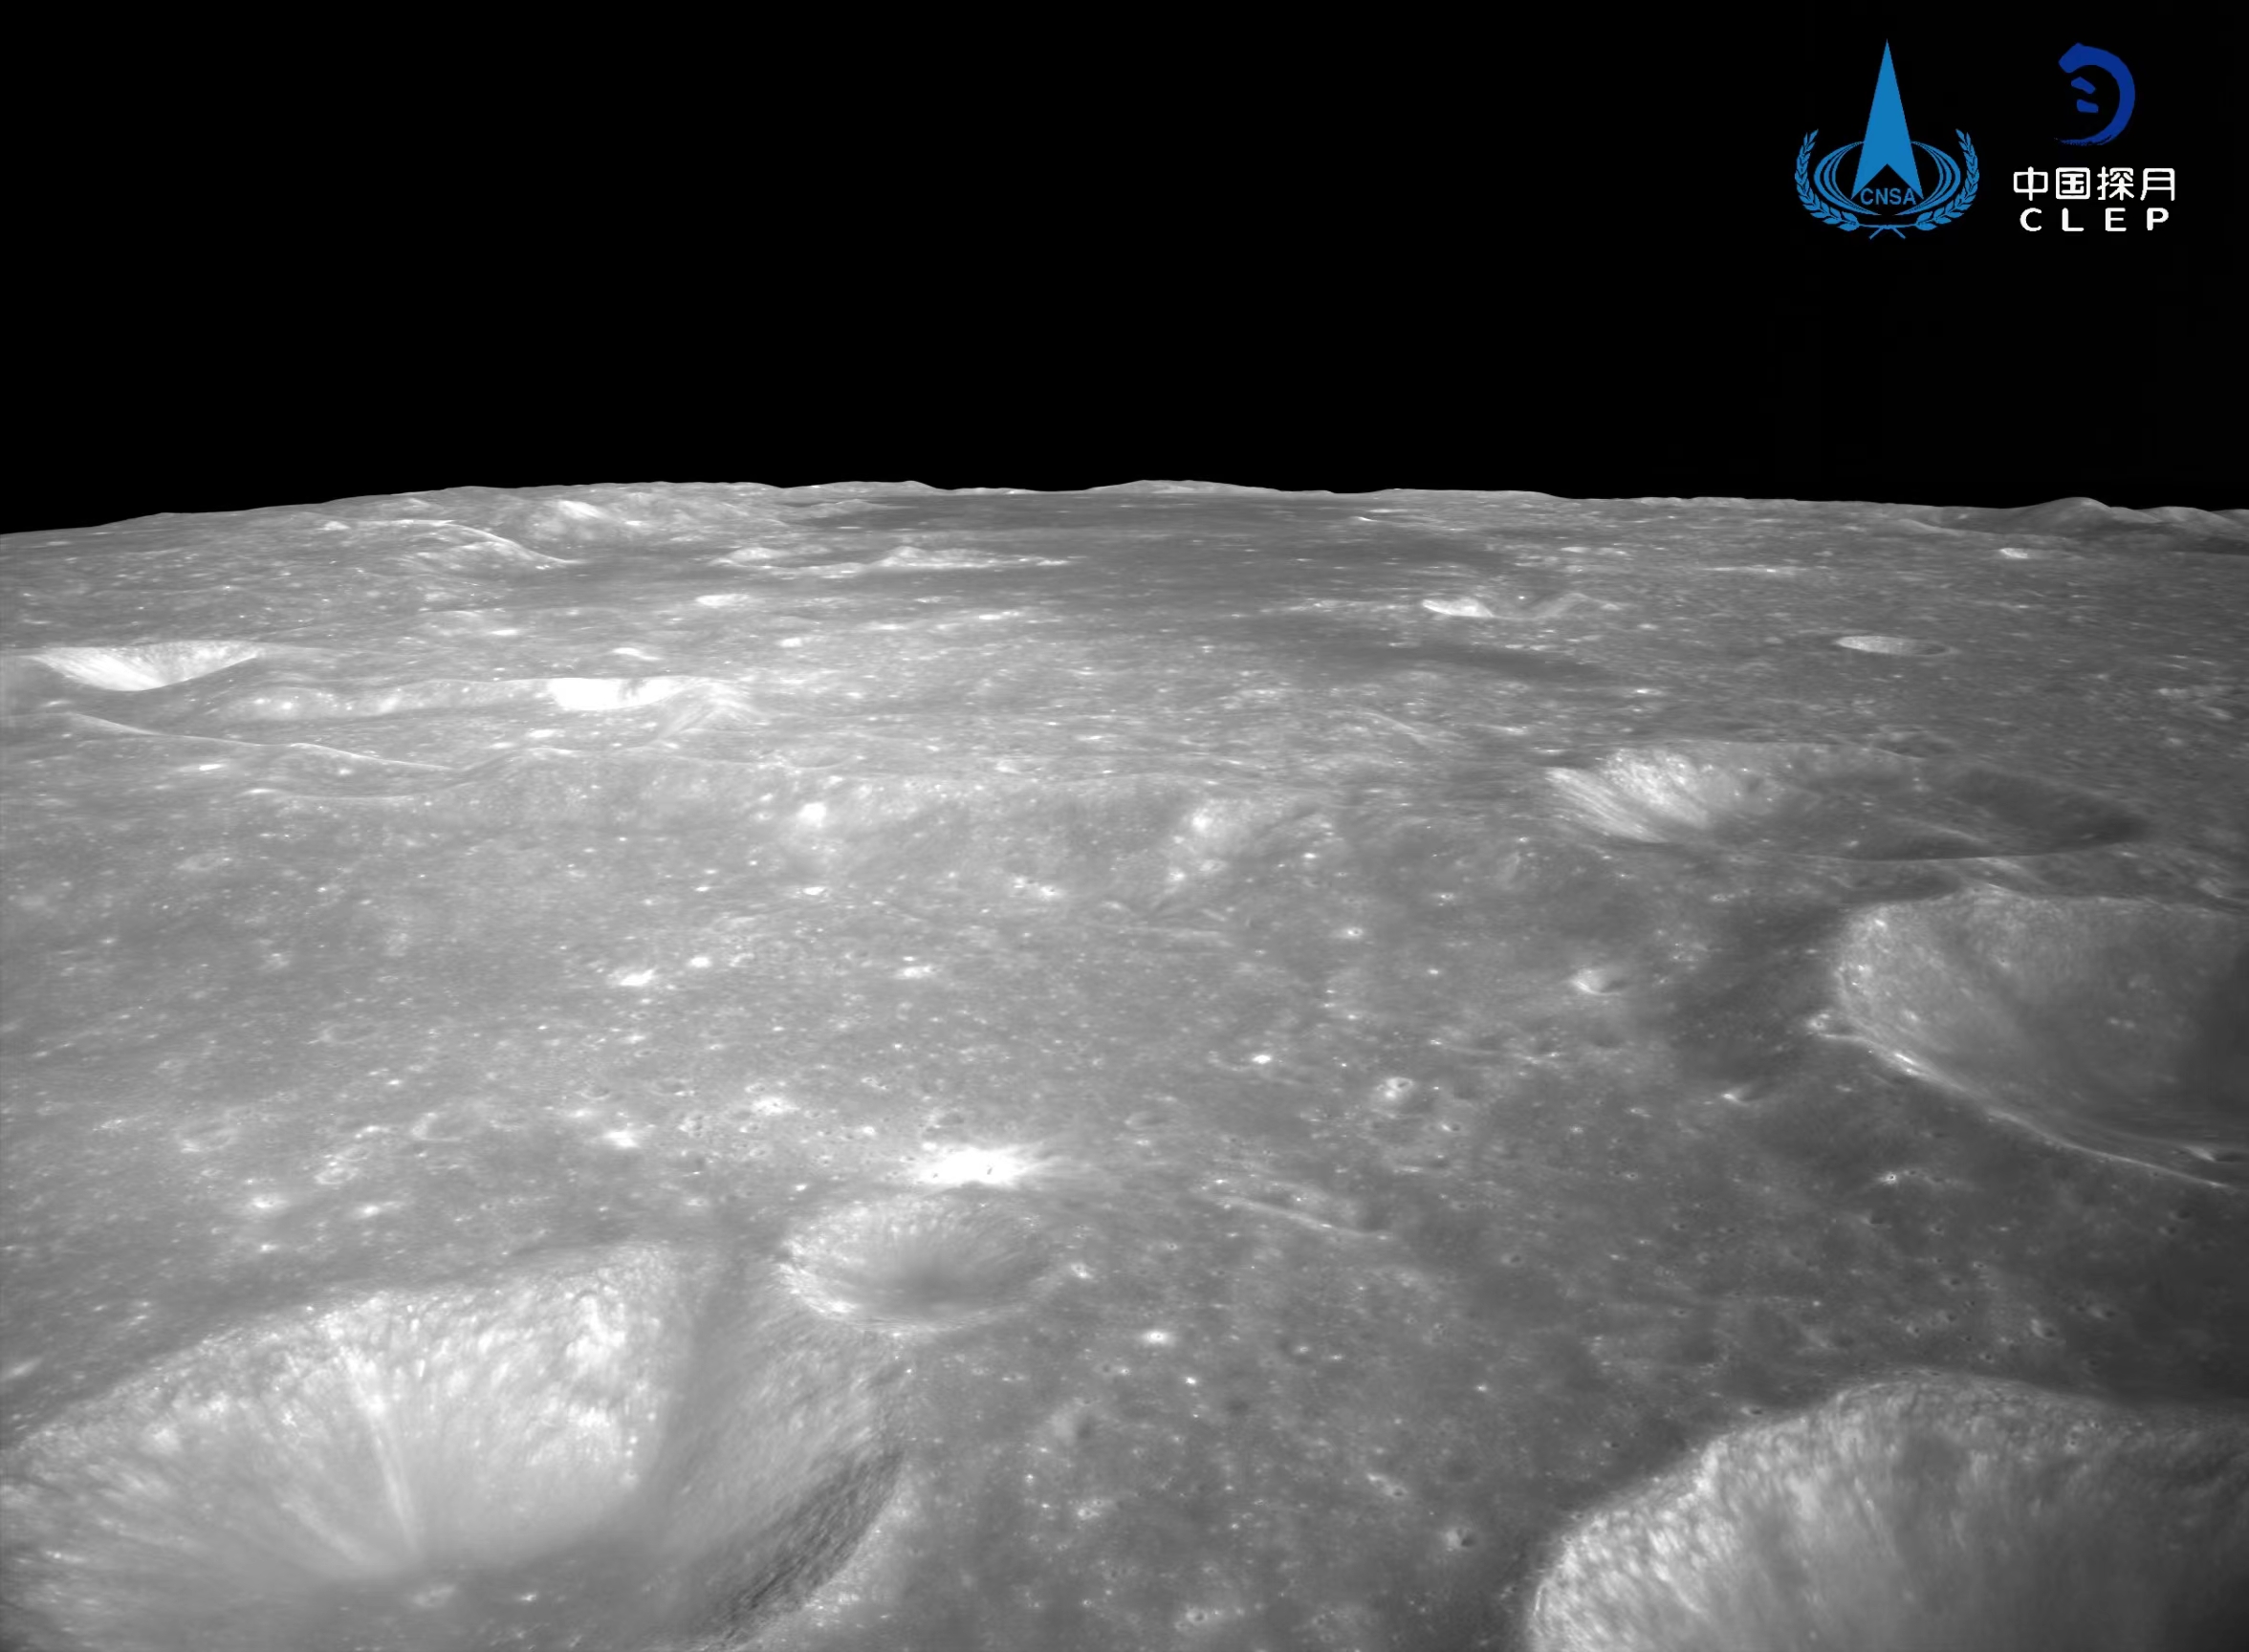 该图由降落相机刚开机时拍摄
，对着陆点北侧月面拍摄的彩色图像镶嵌制作而成。图像上方是着陆点北部查菲环形山，</p><p style=